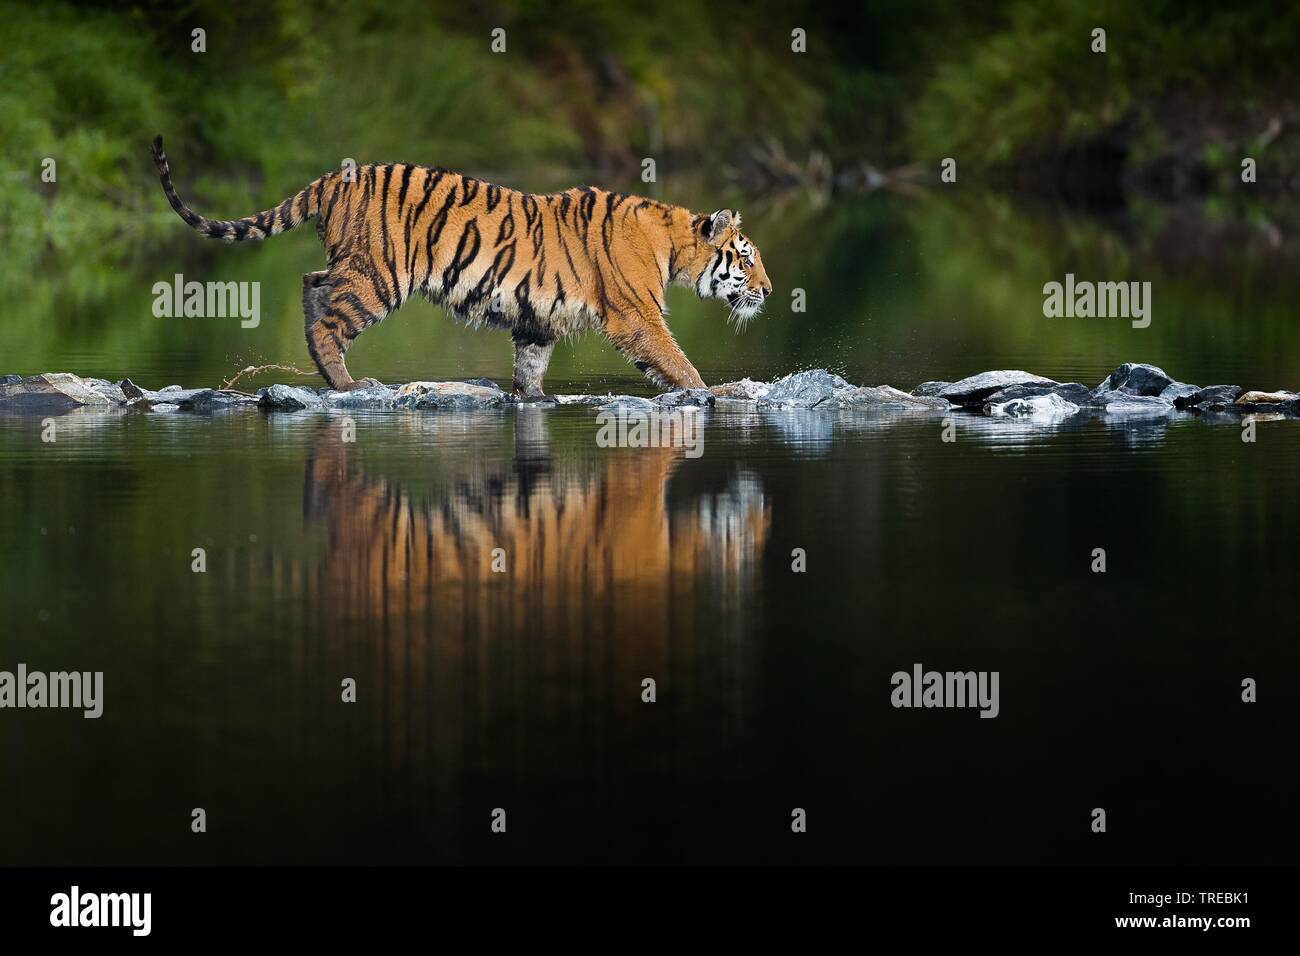 Tigre de Sibérie, Amurian tigre (Panthera tigris altaica), marche sur des pierres dans l'eau, République Tchèque Banque D'Images